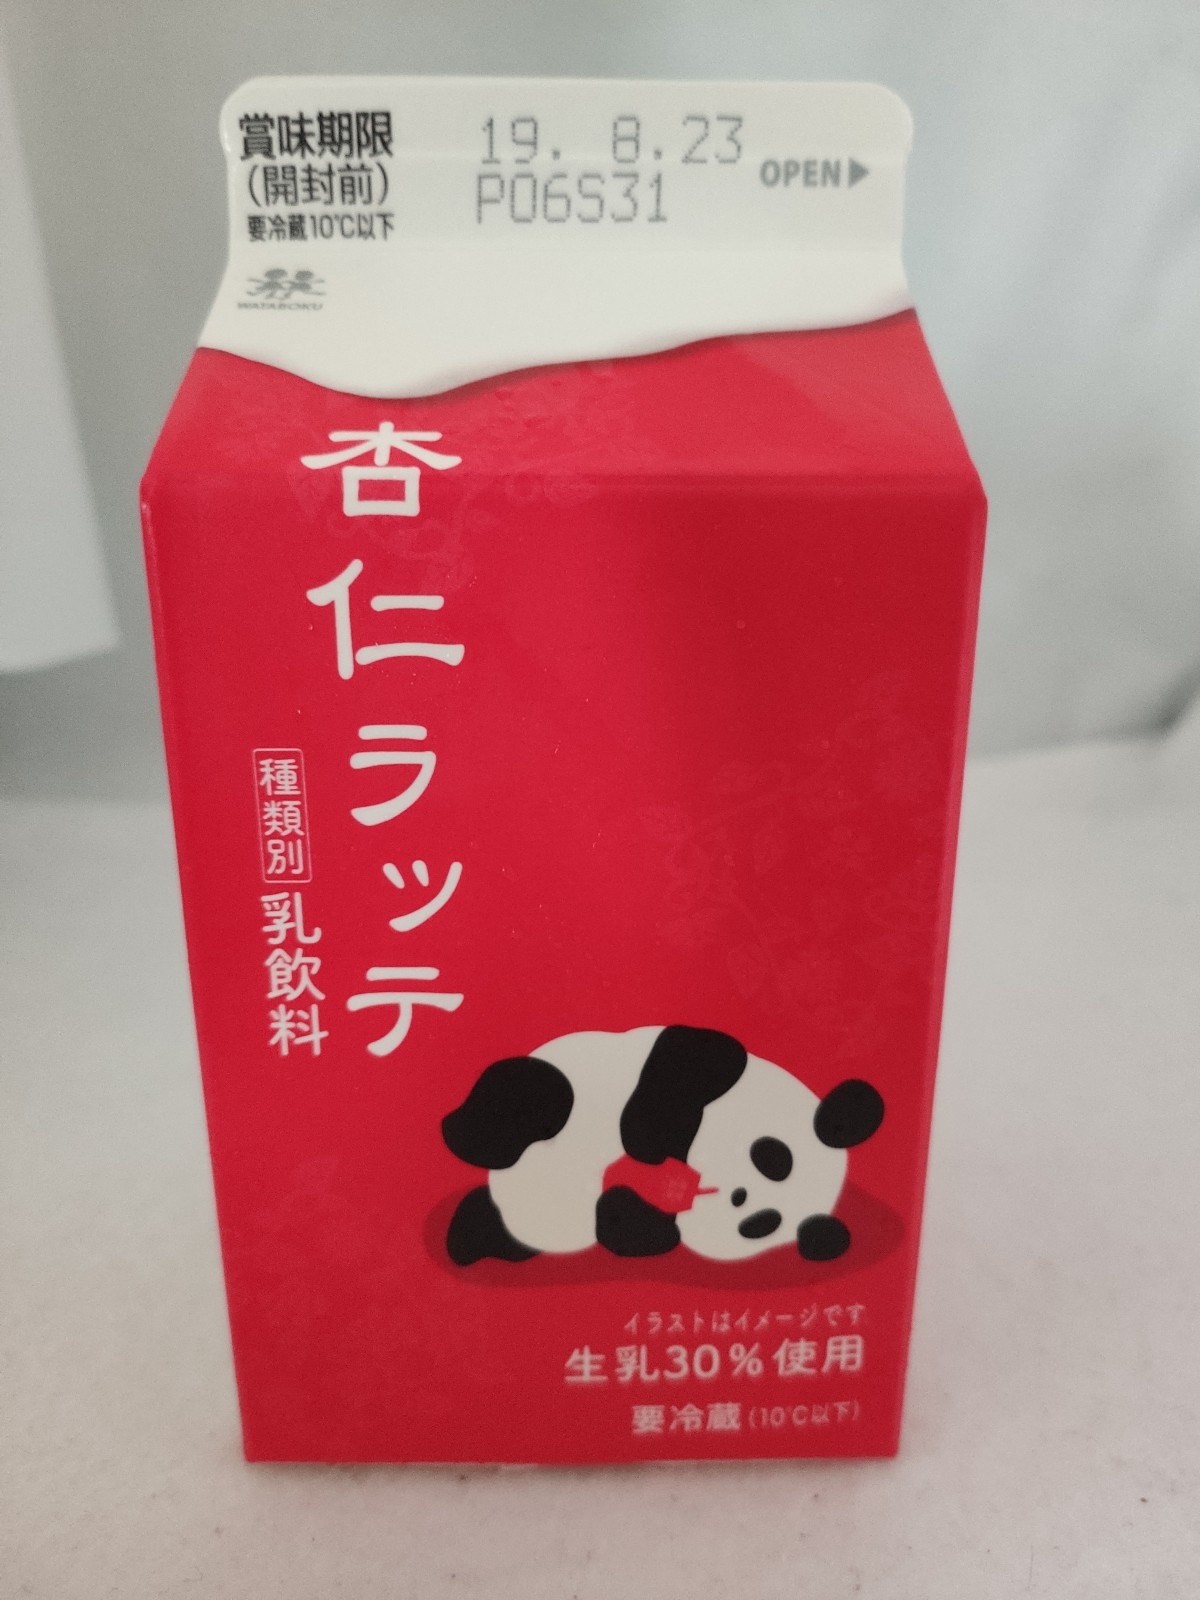 森乳業 杏仁ラッテ 新発売の飲み物をレビューするブログ